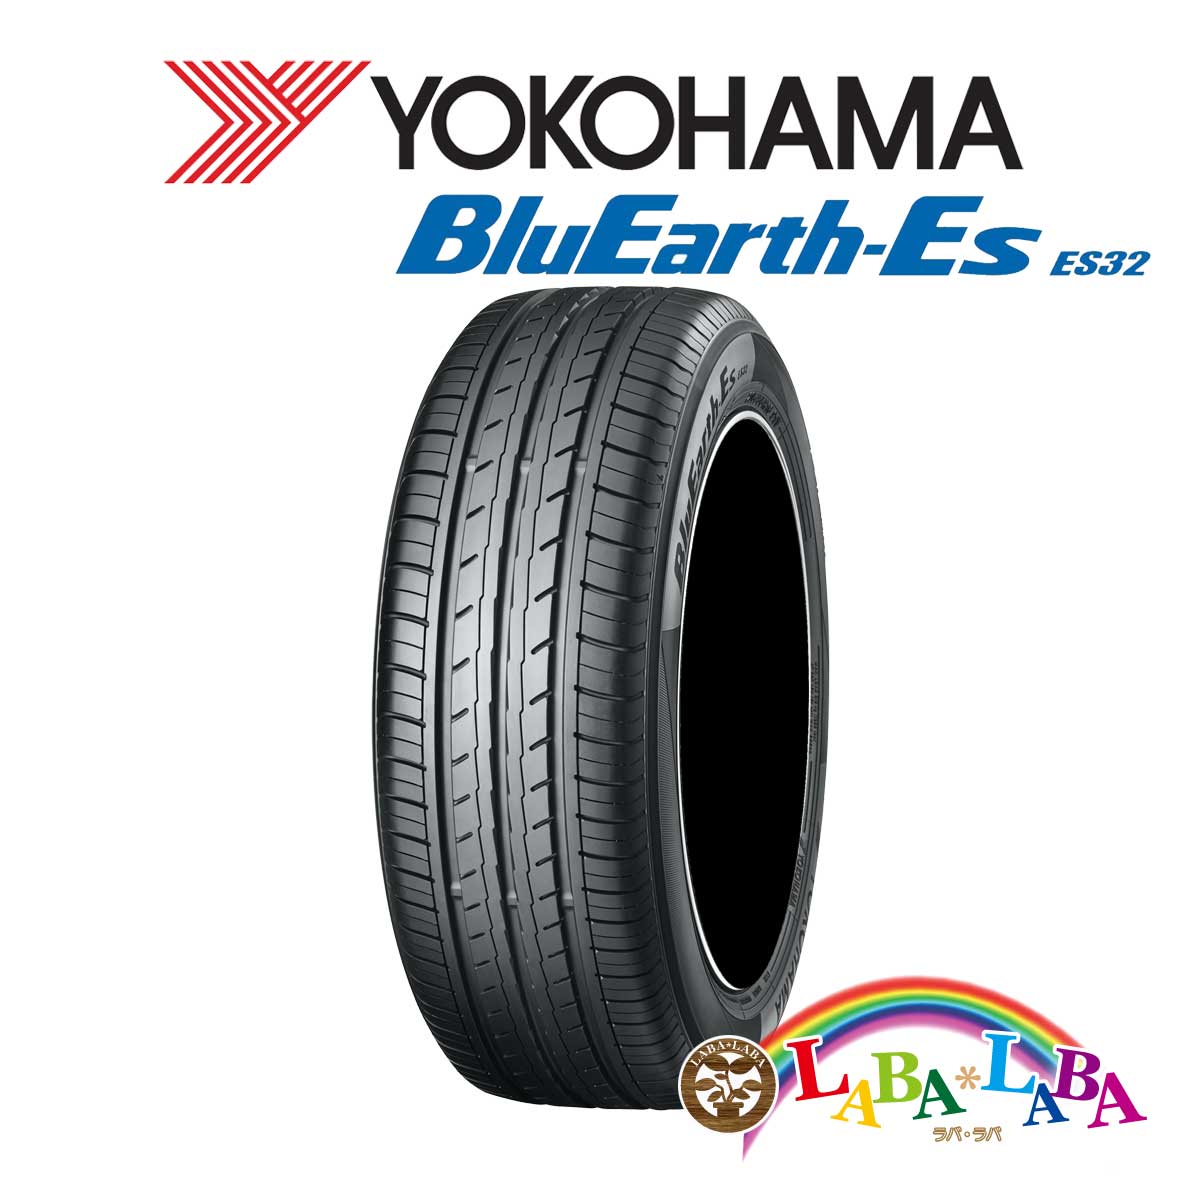 ２本以上送料無料 国産タイヤ サマータイヤ 96%OFF 新品 タイヤのみ YOKOHAMA ヨコハマ ES32 50R17 BluEarth-Es 225 登場! ブルーアース 94V